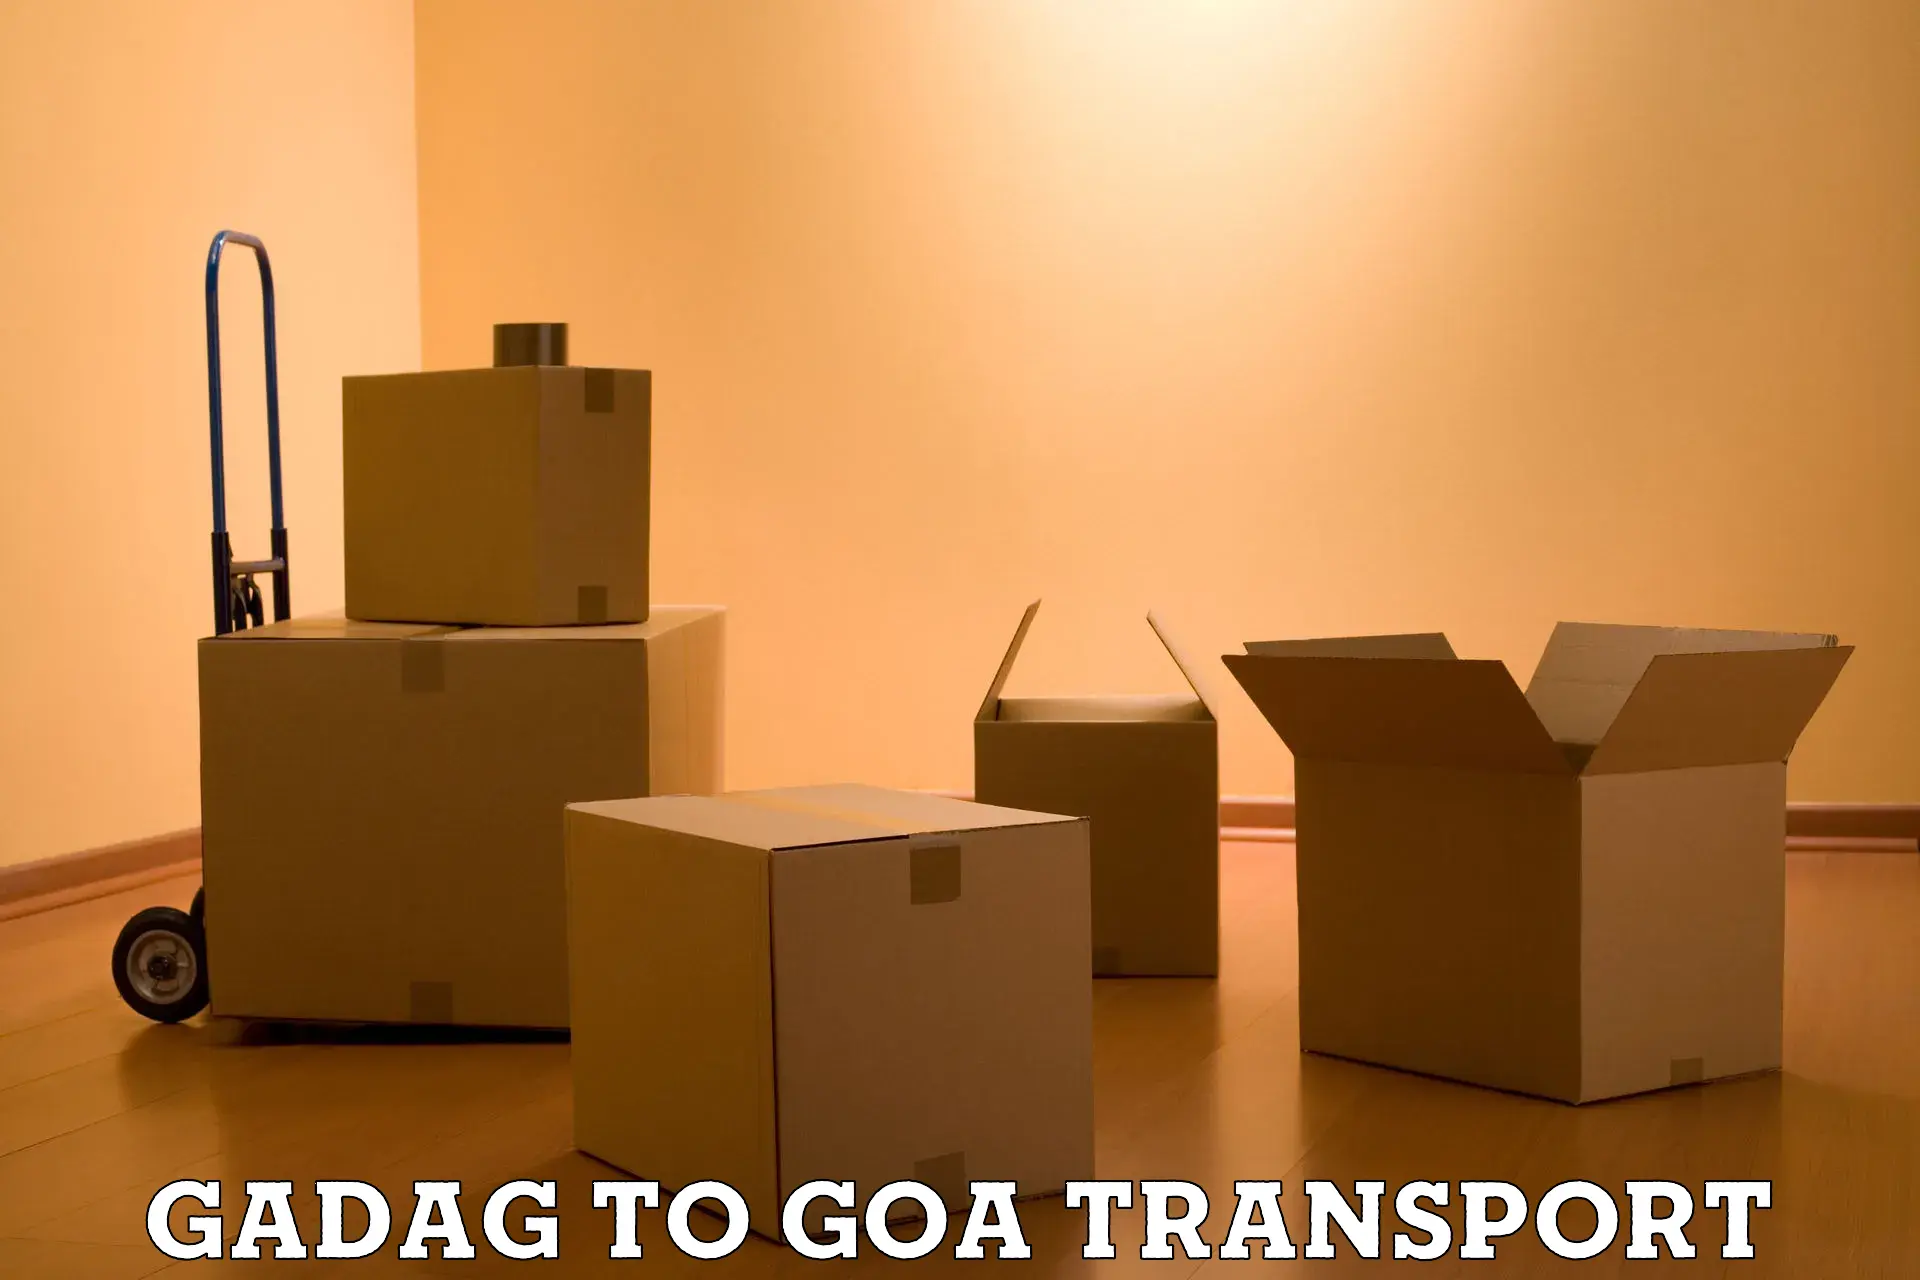 Express transport services Gadag to Ponda